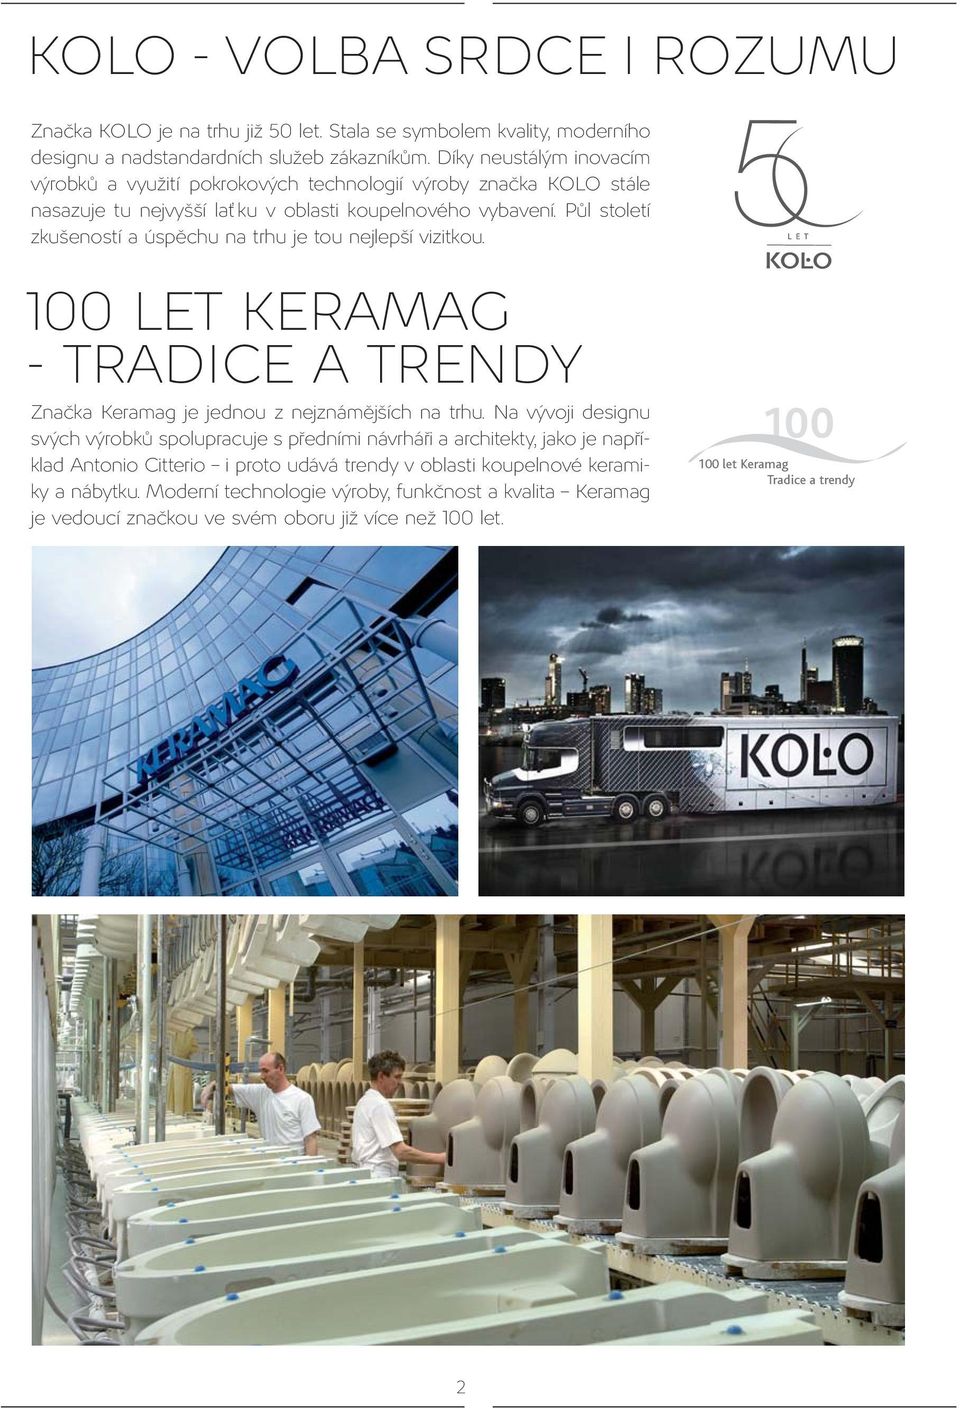 Půl století zkušeností a úspěchu na trhu je tou nejlepší vizitkou. 100 LET KERAMAG - TRADICE A TRENDY Značka Keramag je jednou z nejznámějších na trhu.